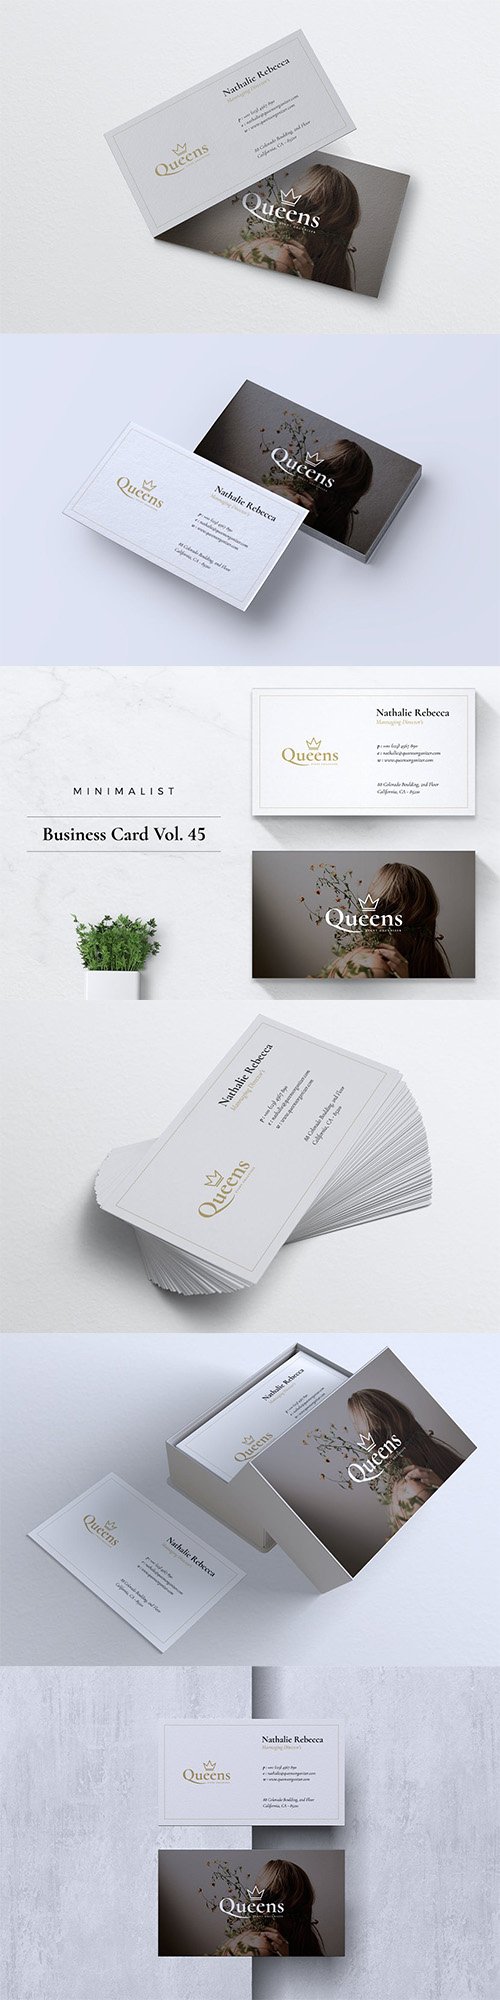 Minimalist Business Card Vol. 45 PSD